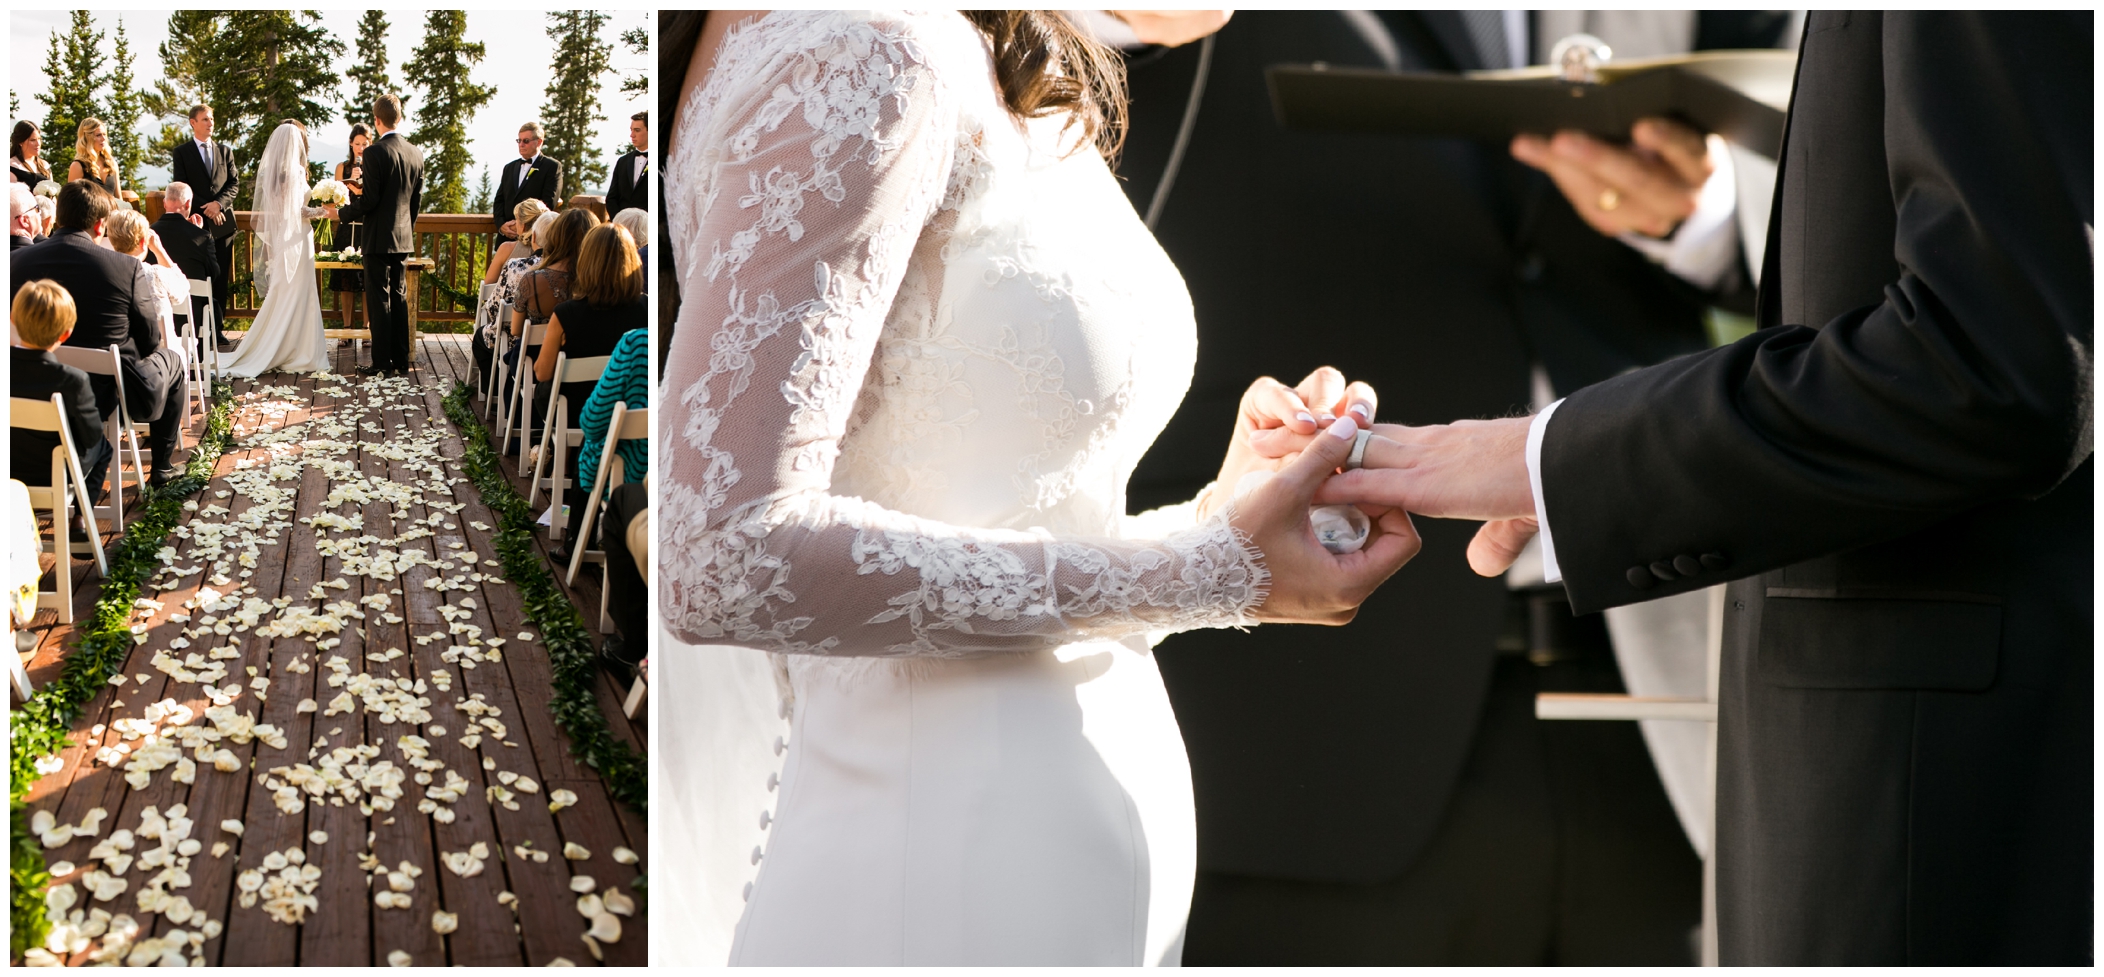 ring exchange at Keystone Colorado outdoor wedding ceremony 